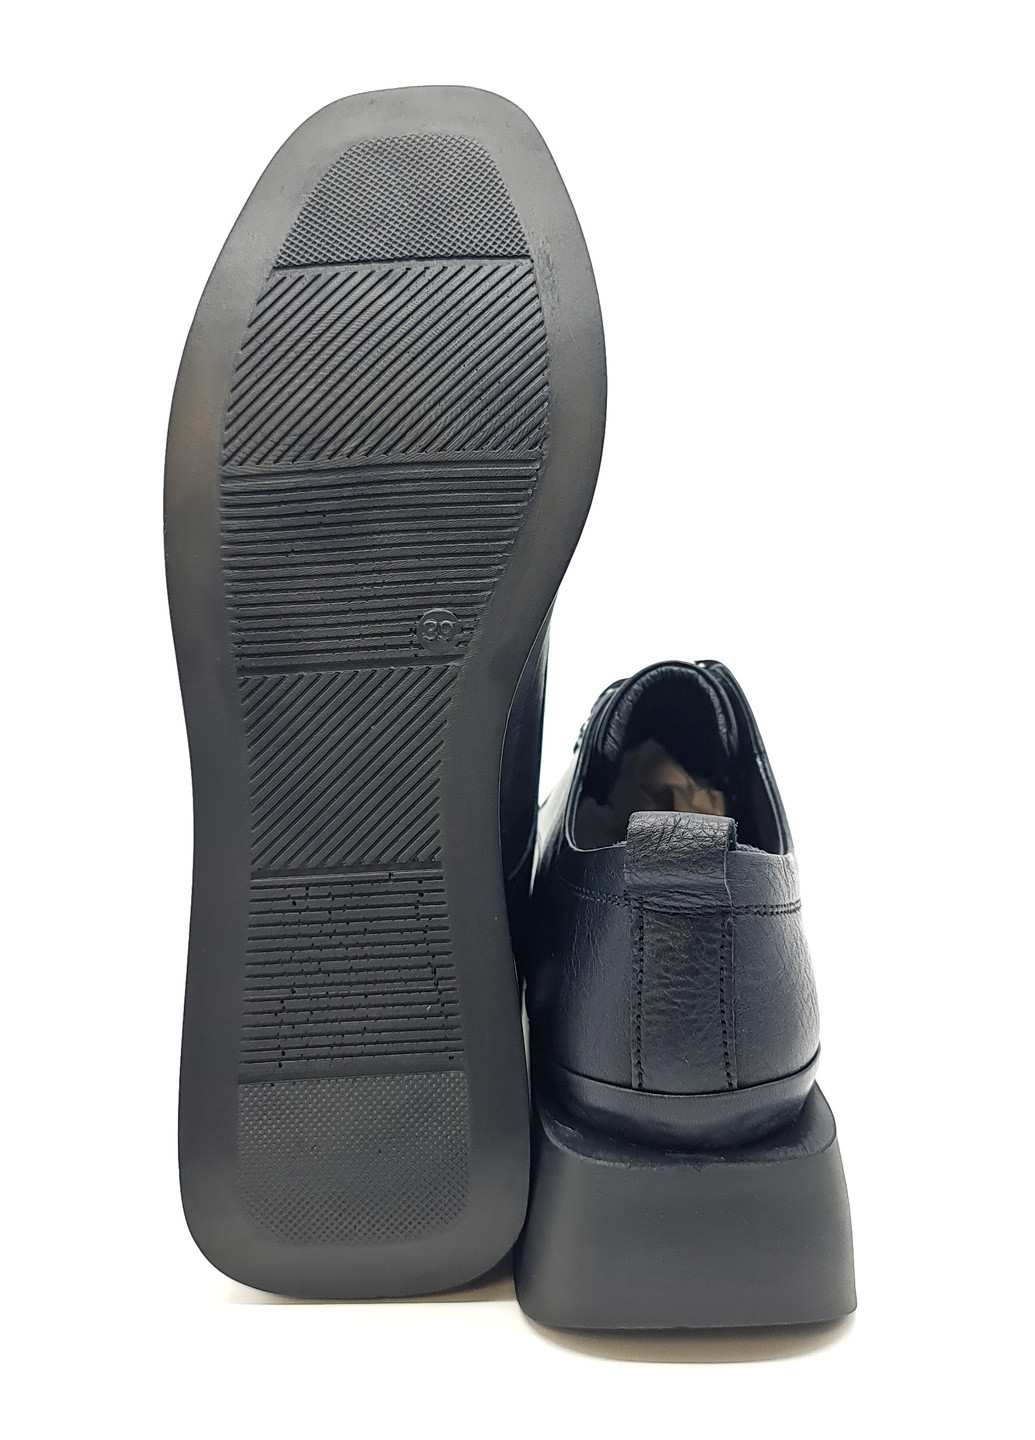 Женские туфли черные кожаные L-11-1 24,5 см (р) Lonza